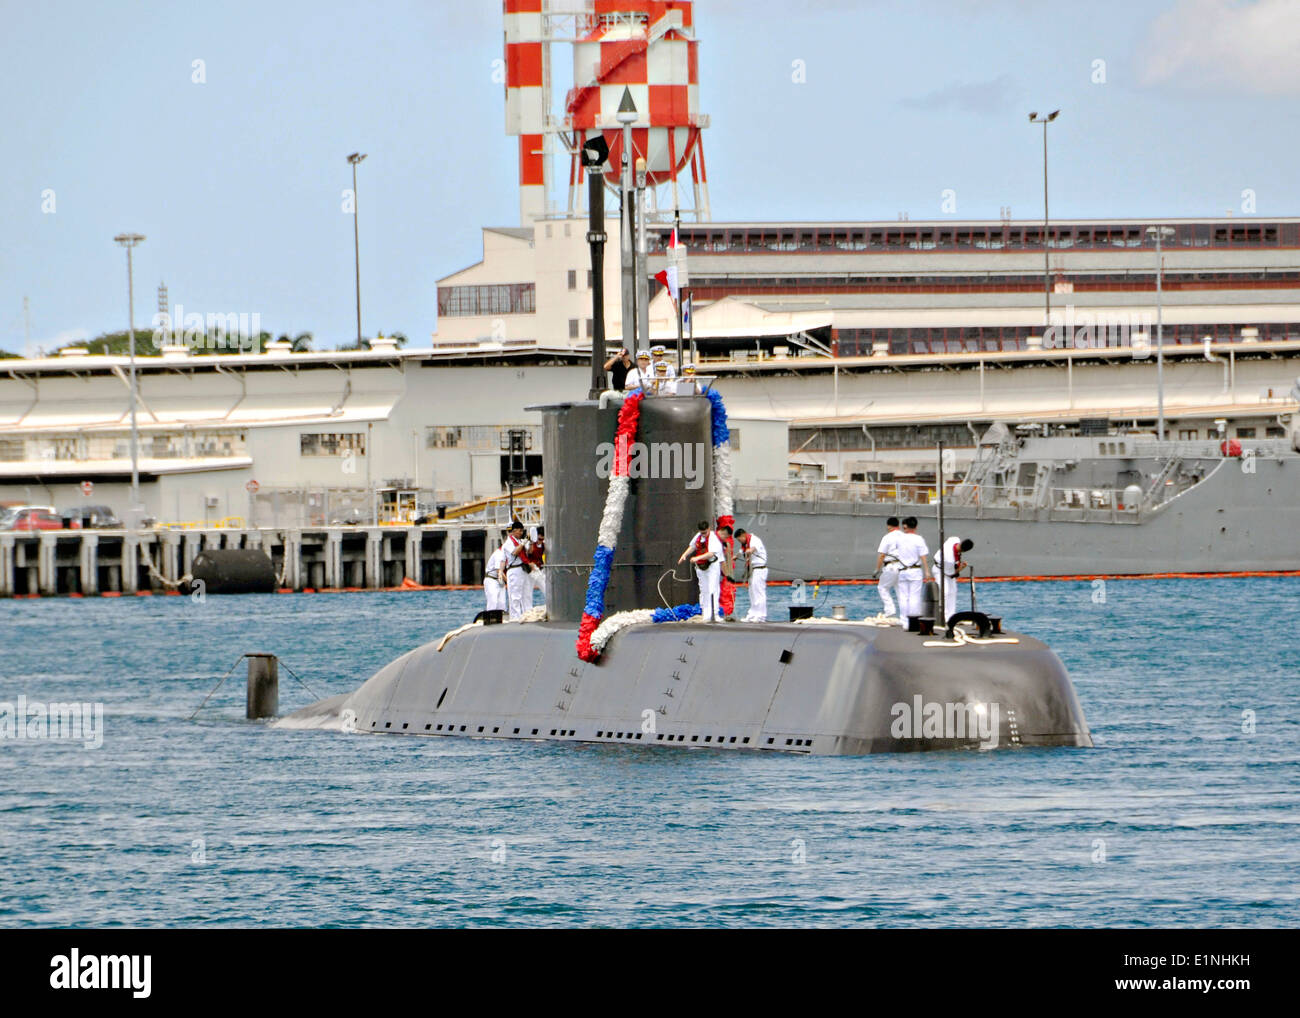 Die Republik von Korea Chang Bogo Klasse dieselelektrische Angriff u-Boot-Lee Sun-Sin zieht in gemeinsame Basis Pearl Harbor-Hickam zur Teilnahme an des Rand der pazifischen Übungen 6. Juni 2014 in Honolulu, Hawaii. Stockfoto